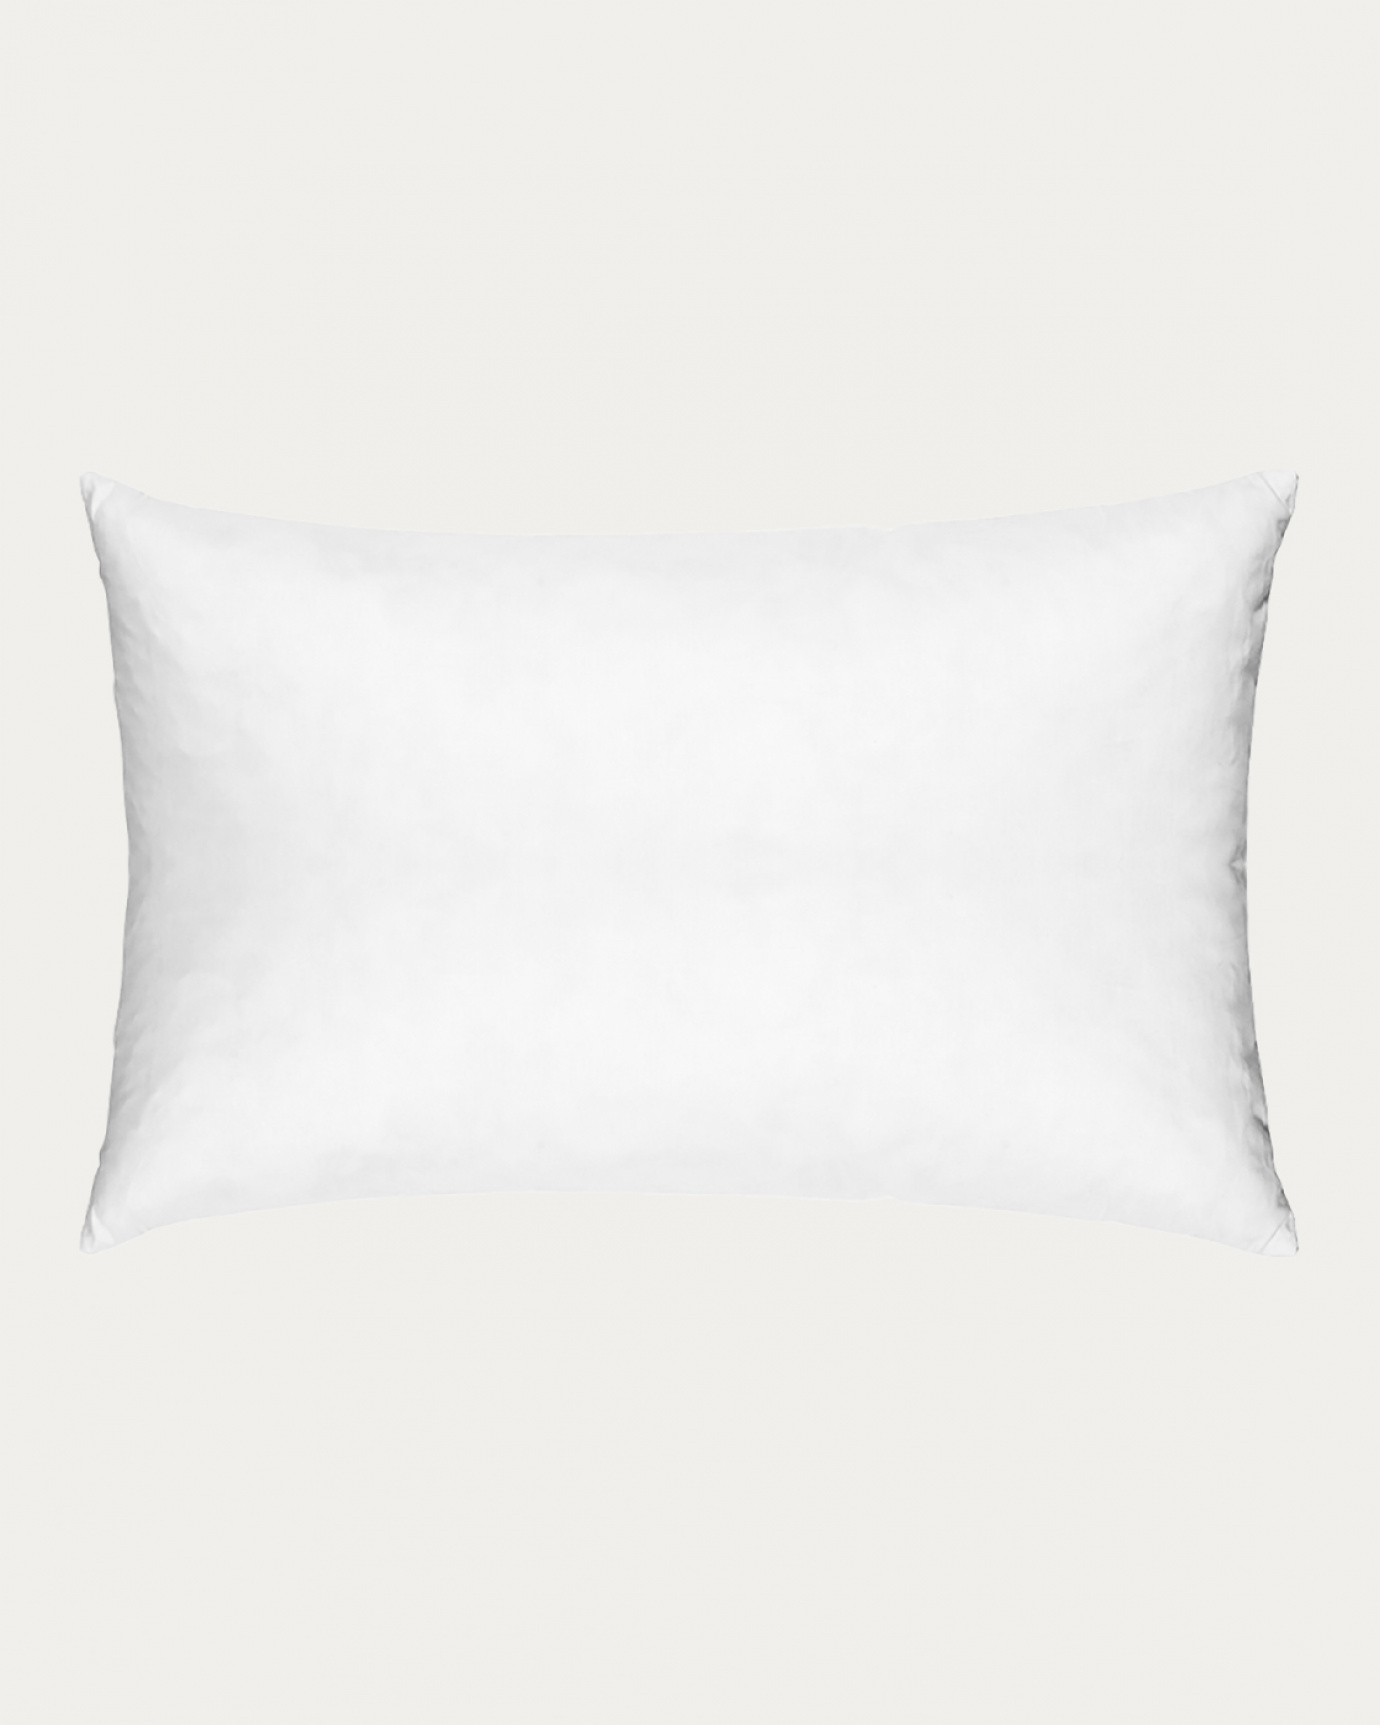 Immagine prodotto bianco SYNTHETIC cuscini interni in cotone con imbottitura in poliestere di LINUM DESIGN. Dimensioni 40x60 cm.